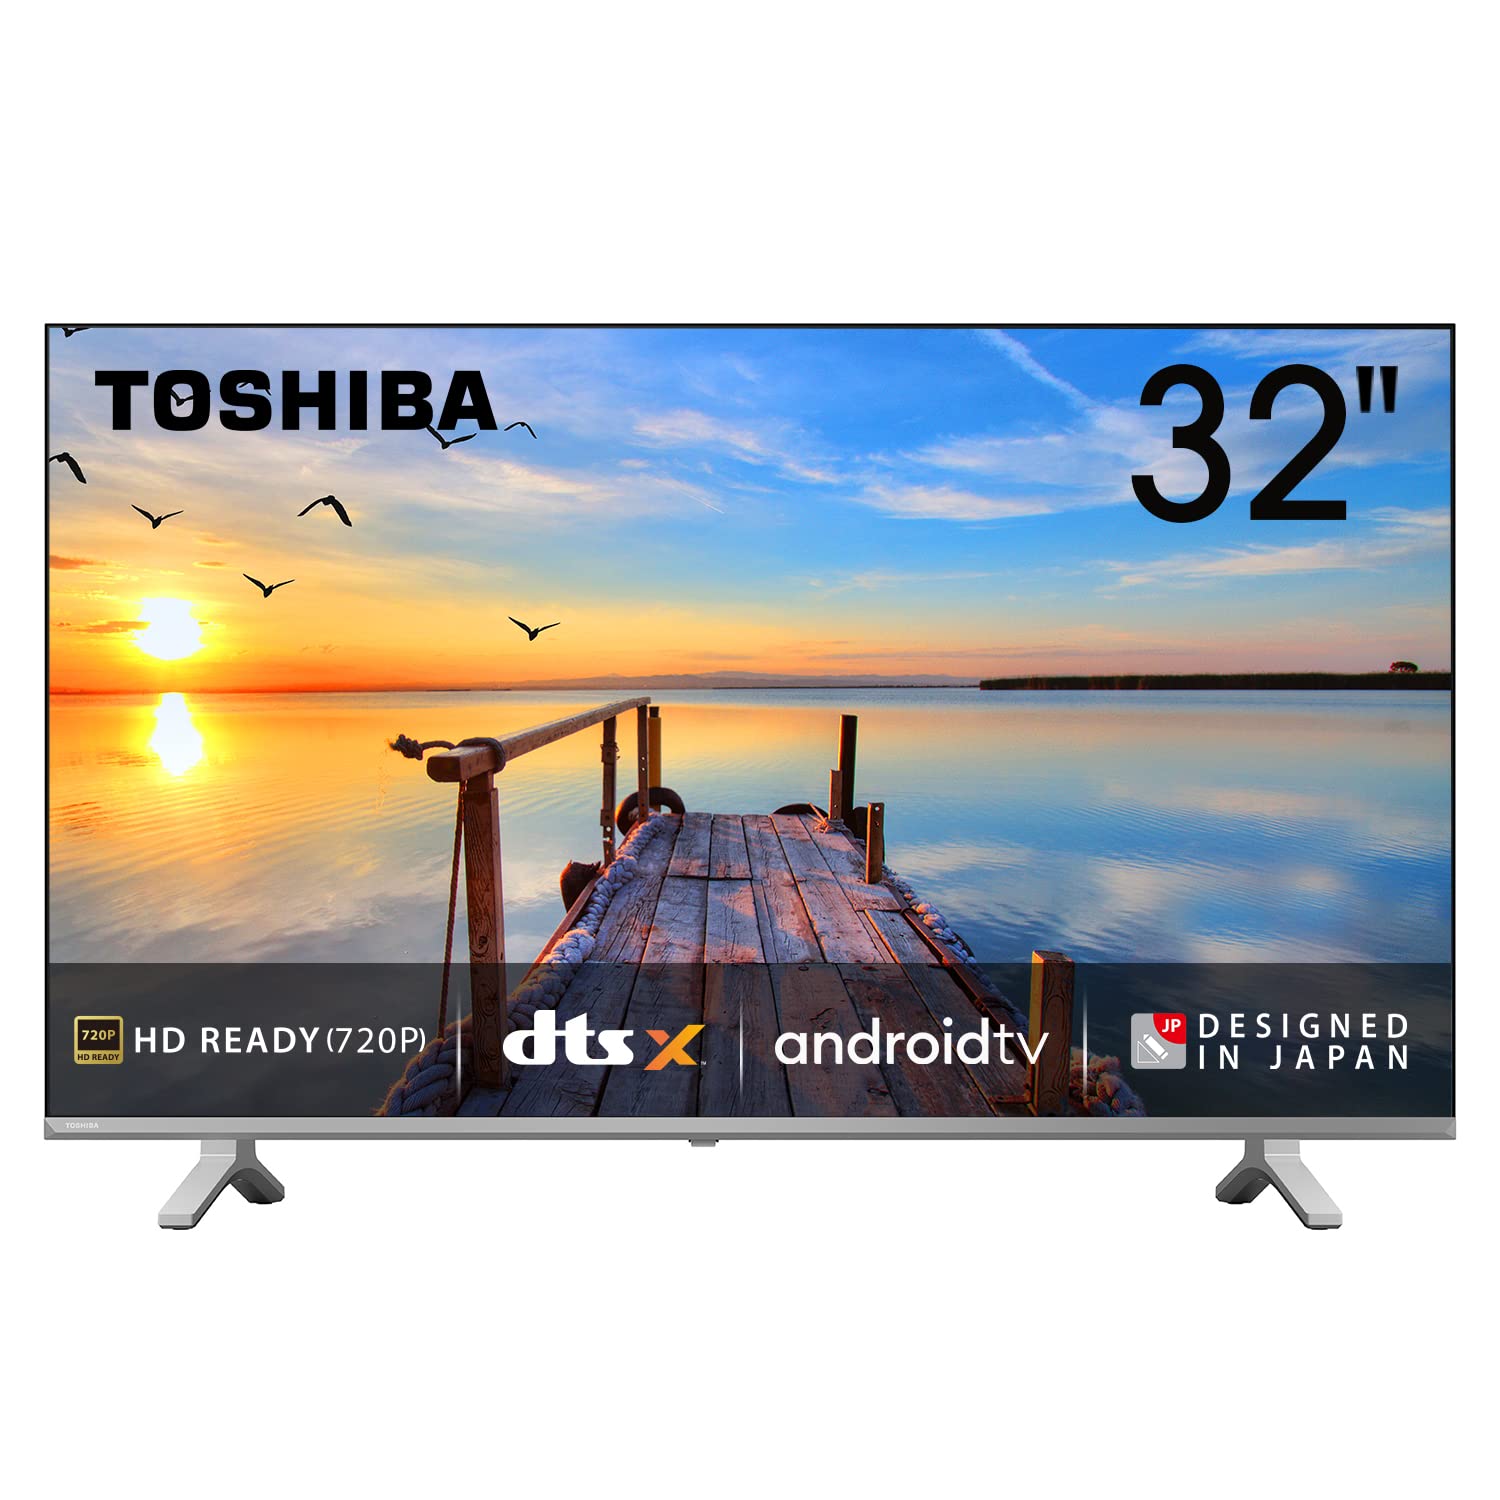 Best TV Deal: अमेजन पर Toshiba के स्मार्ट टीवी मिल रहे हैं आधी कीमत में, जानिये क्या है ये शानदार डील?